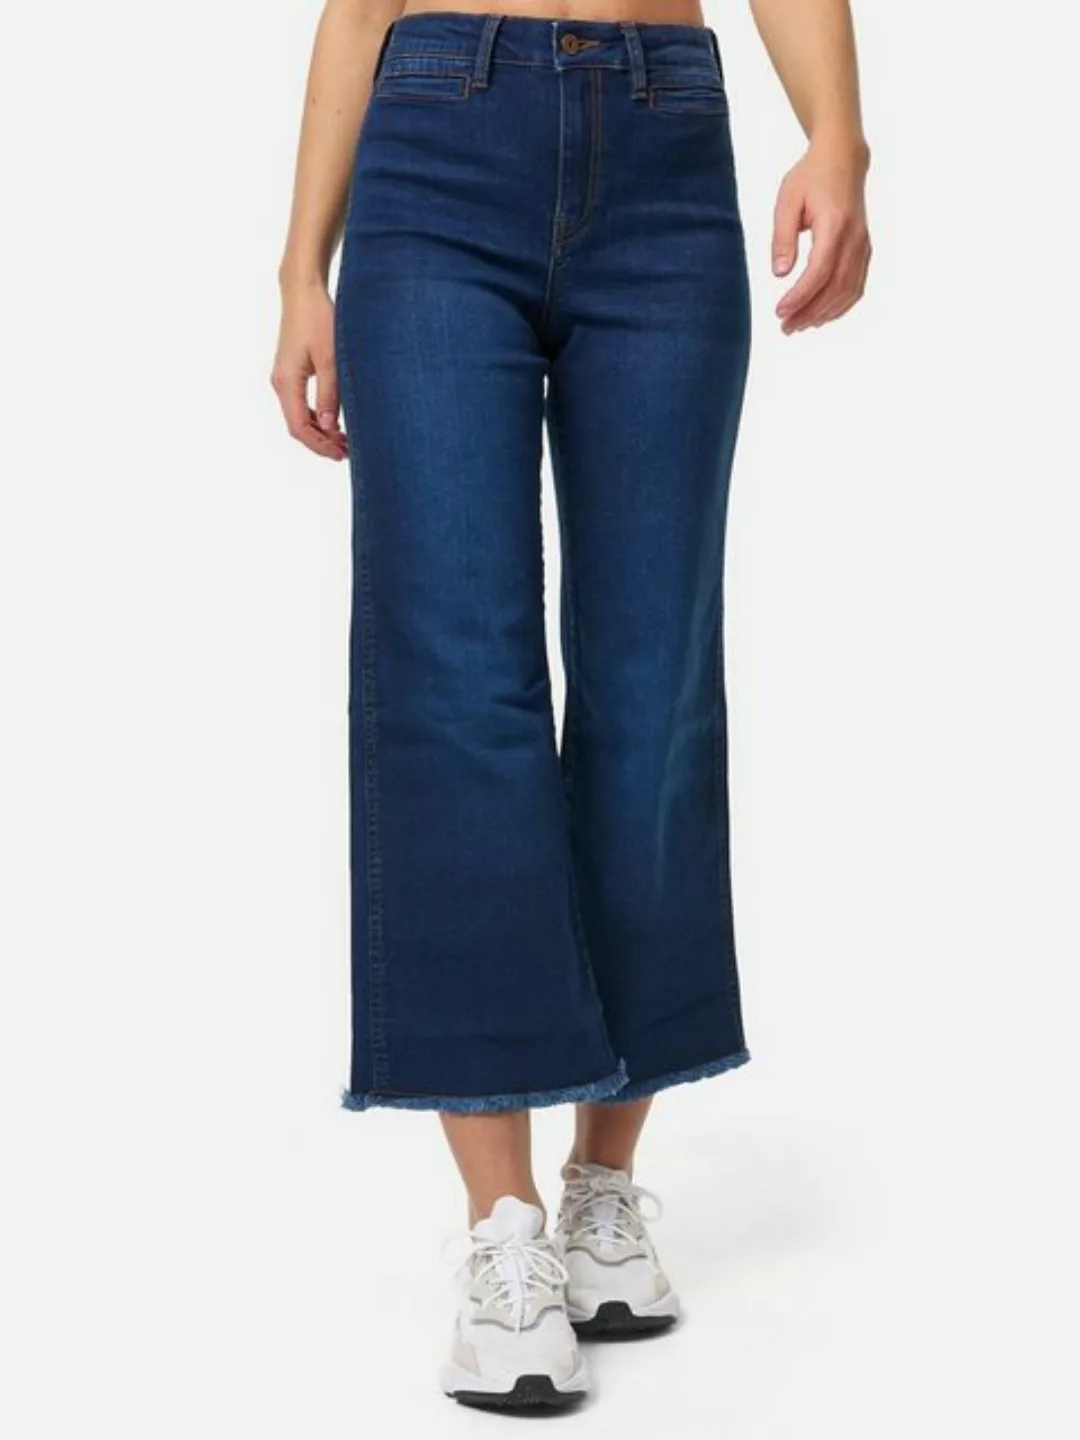 Tazzio Bootcut-Jeans F113 Damen Flared Jeanshose günstig online kaufen